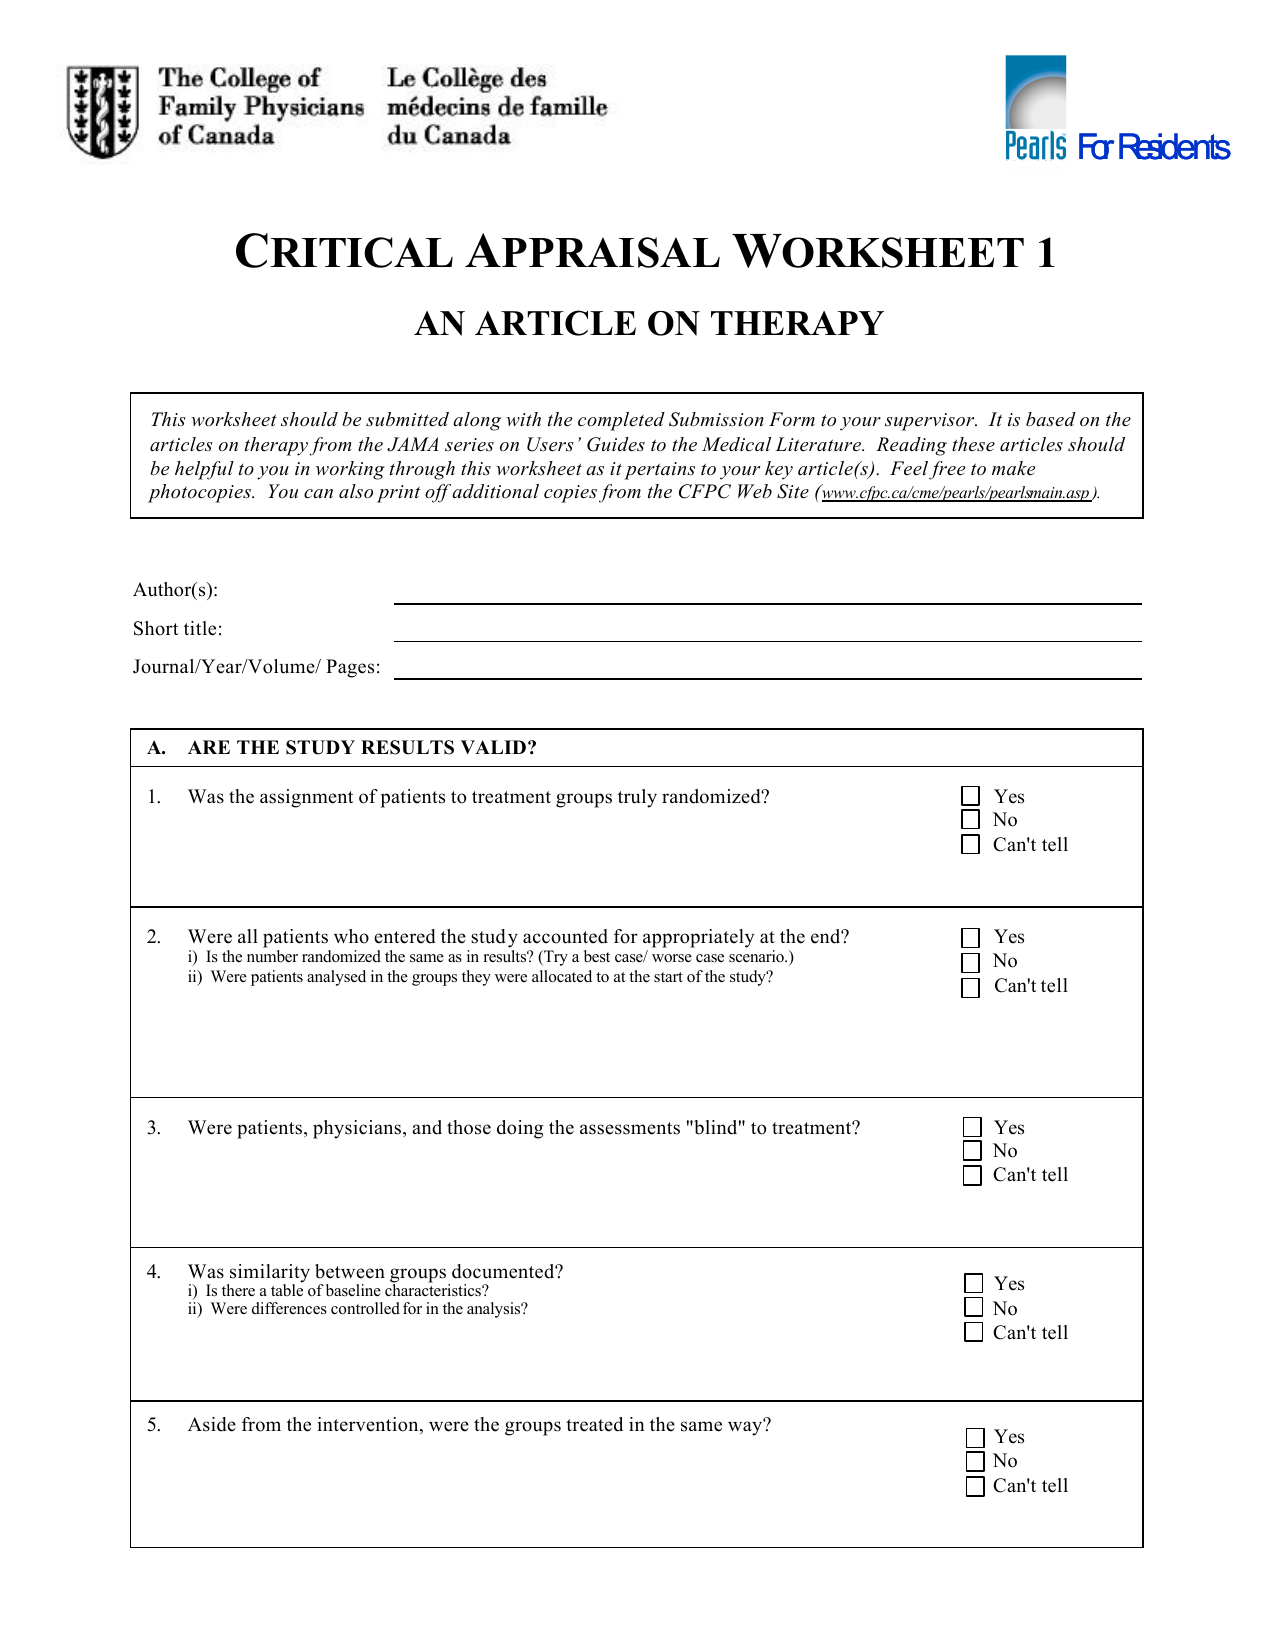 in home appraisal checklist